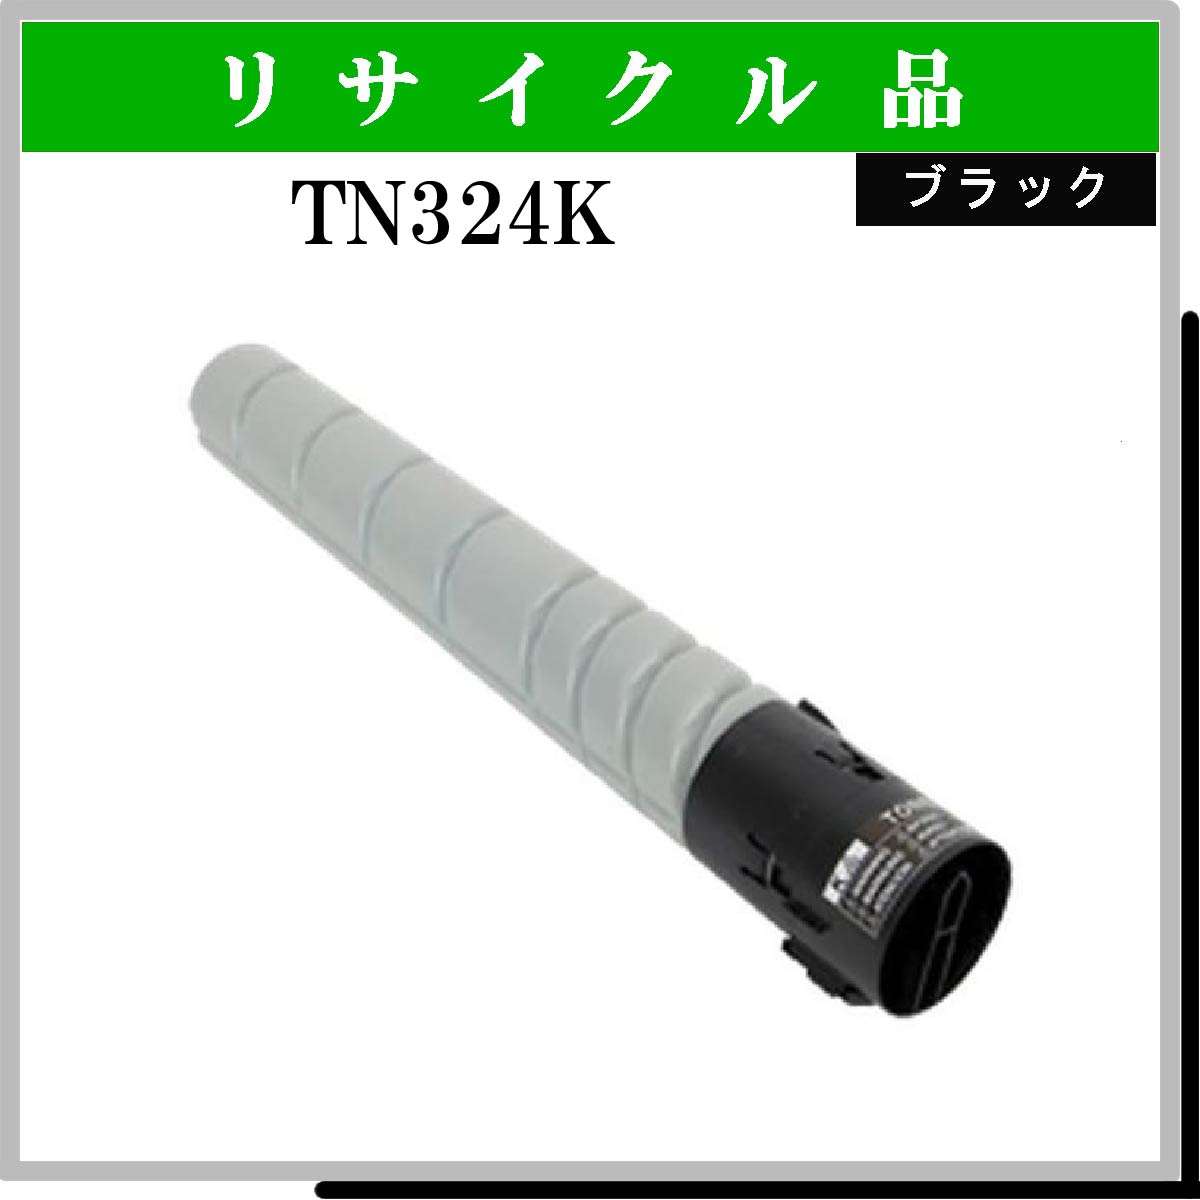 TN324K